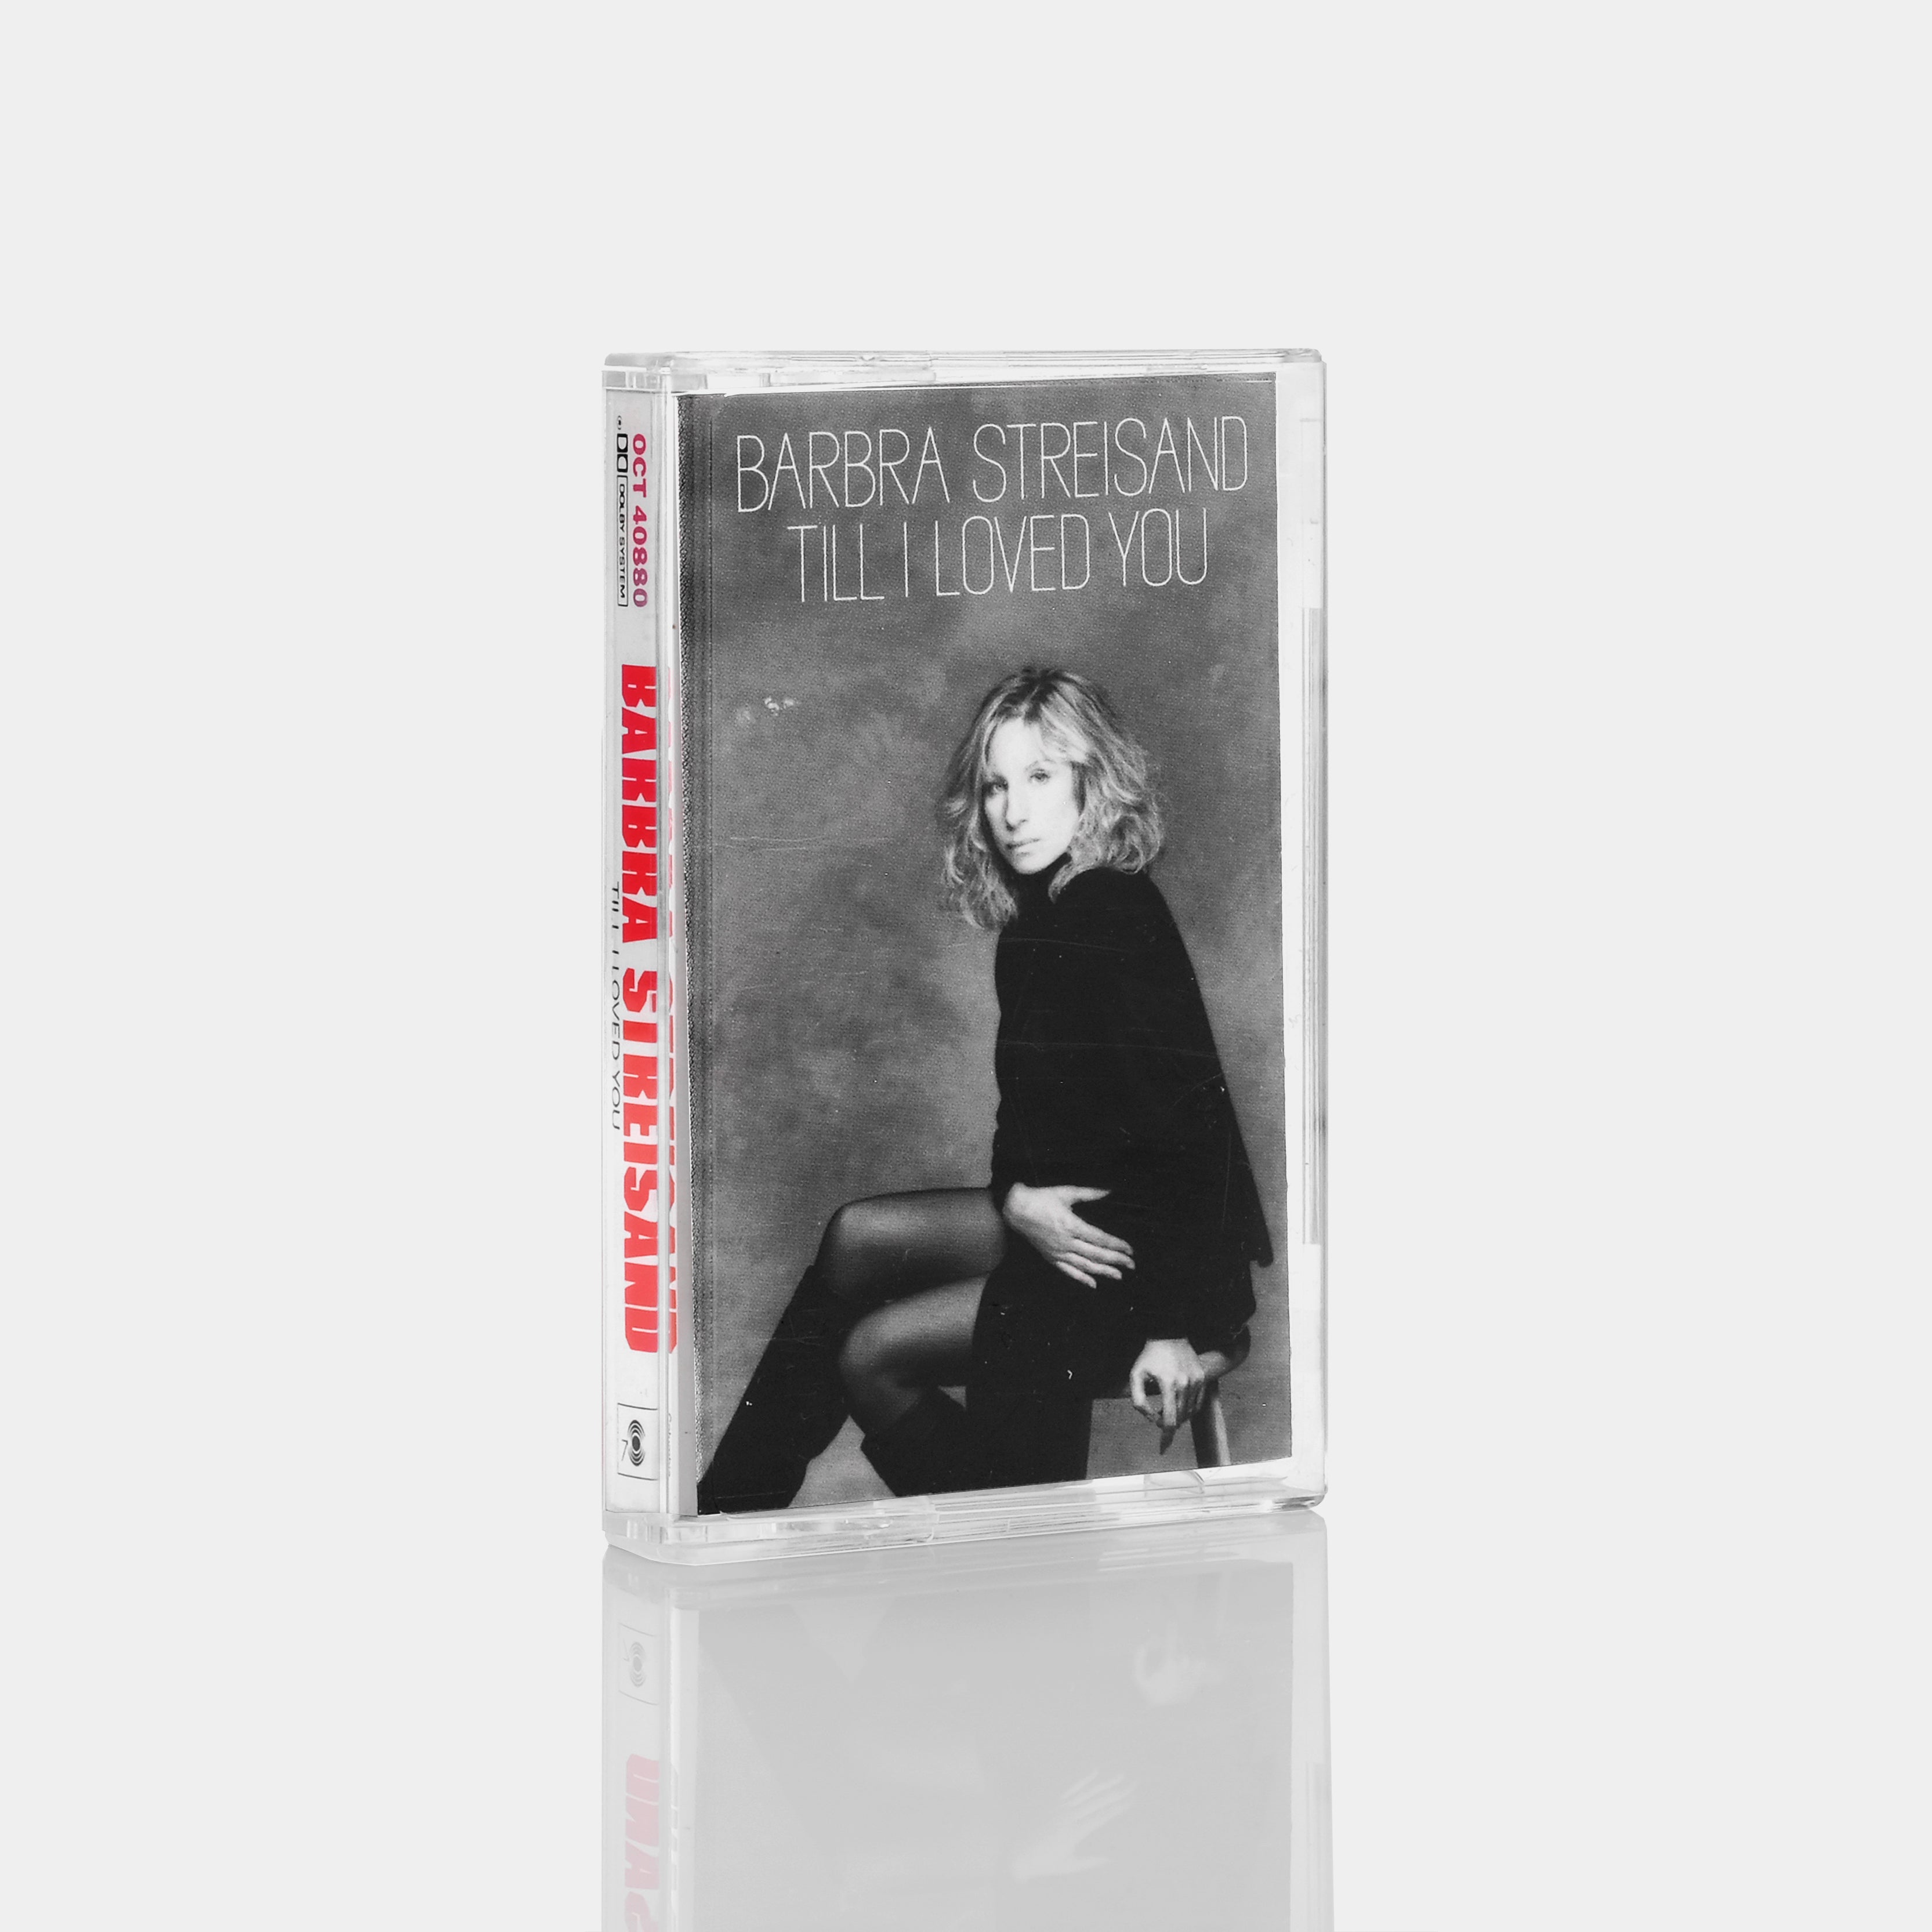 Barbra Streisand -Till I Loved You Cassette Tape